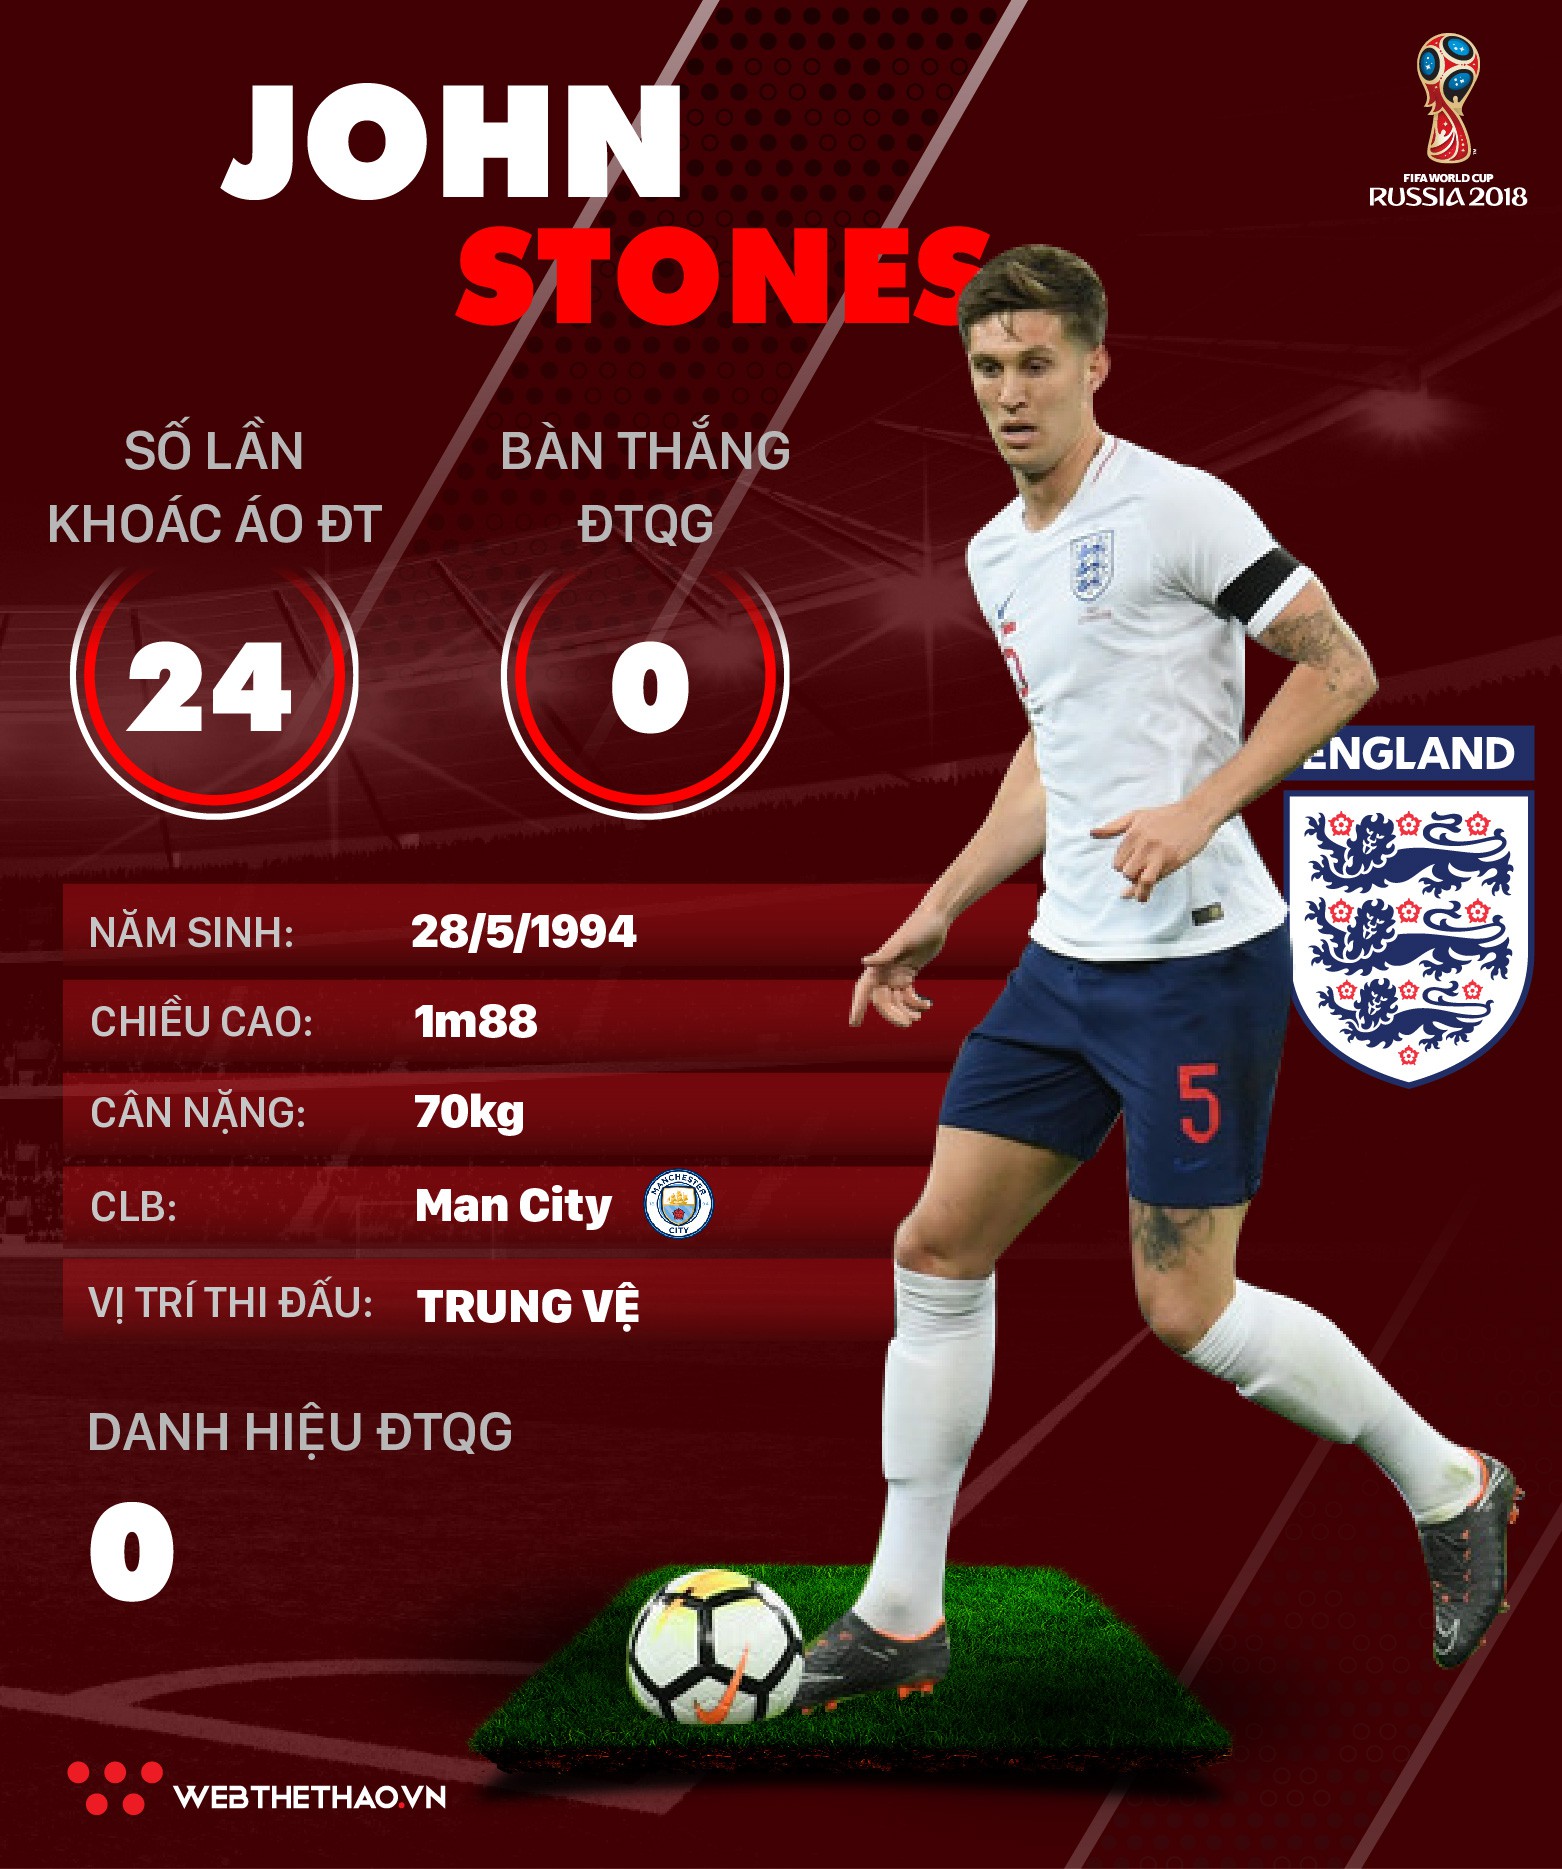 Thông tin cầu thủ John Stones của ĐT Anh dự World Cup 2018